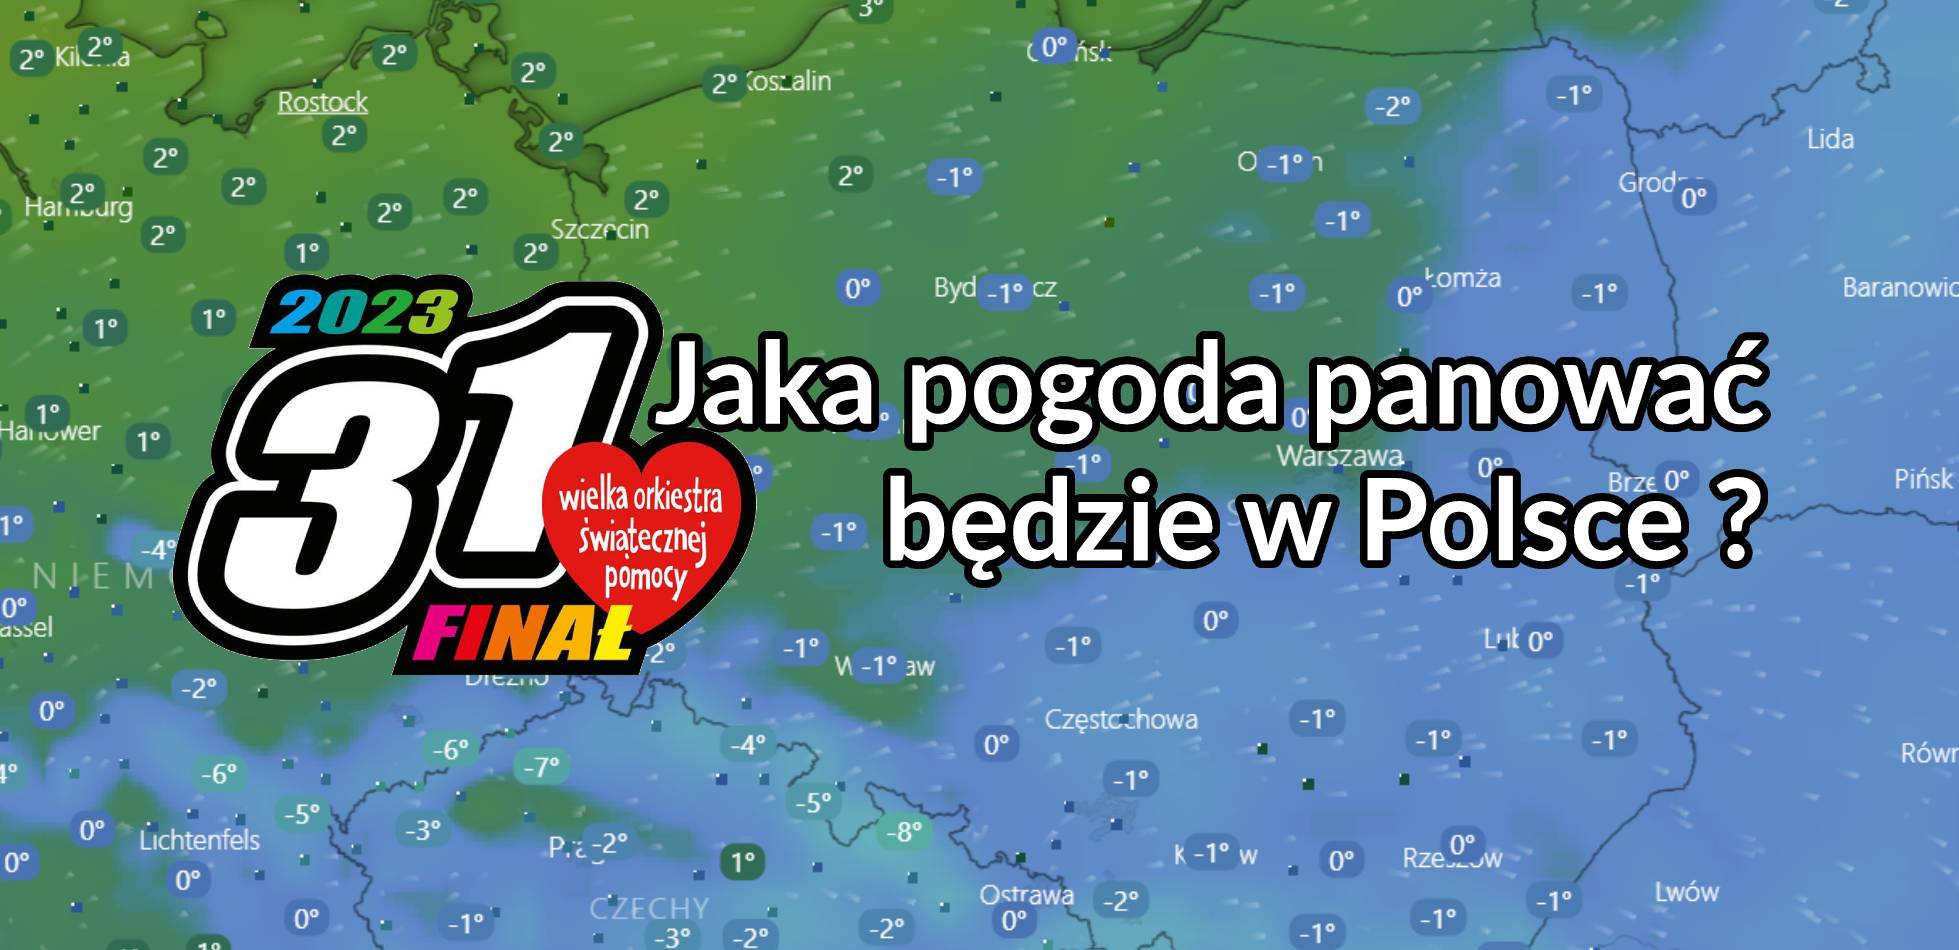 31 finał WOŚP: Jaka pogoda panować będzie w Polsce ?